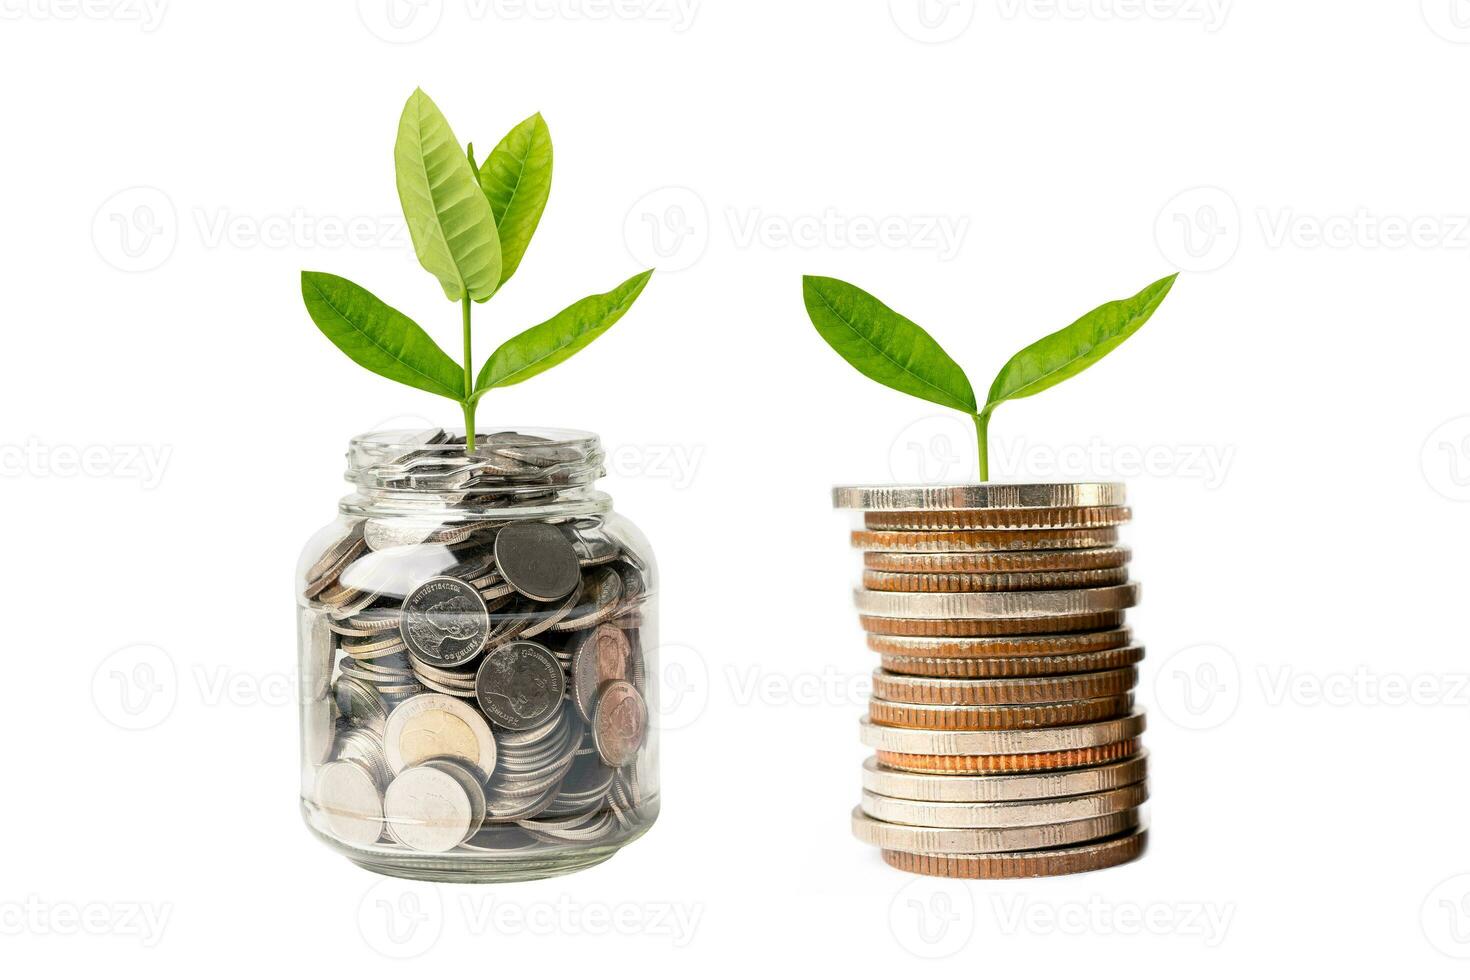 hoja de plumule de árbol en monedas de ahorro de dinero, concepto de inversión de banca de ahorro de finanzas comerciales. foto